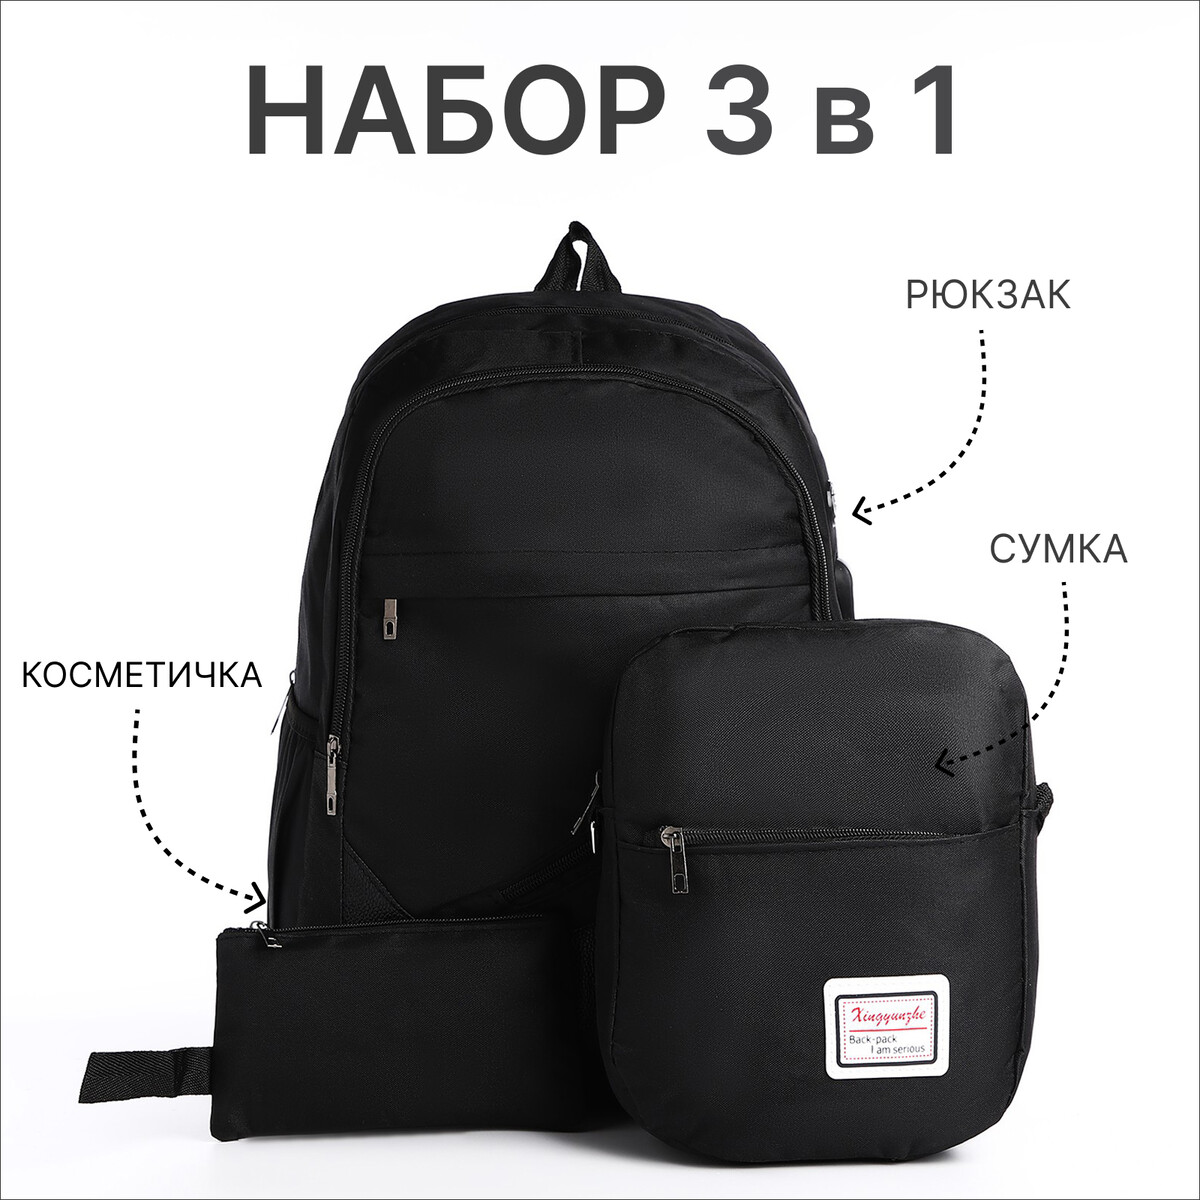 Рюкзак на молнии, с usb, 4 наружных кармана, сумка, пенал, цвет черный